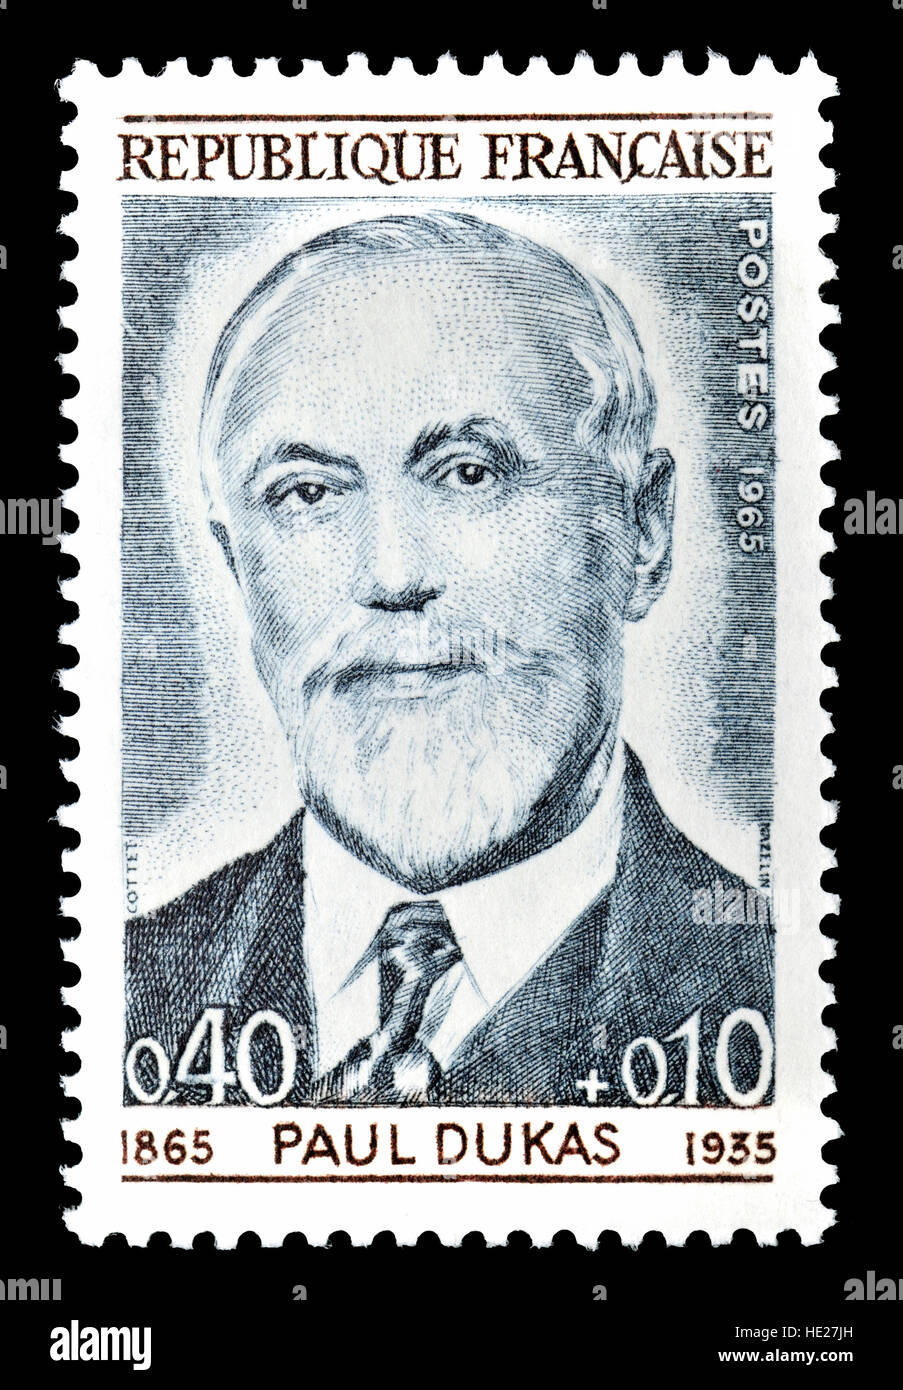 Timbre-poste français (1965) : Paul Abraham Dukas (1865 - 1935) compositeur français, critique, universitaire et enseignant. Banque D'Images